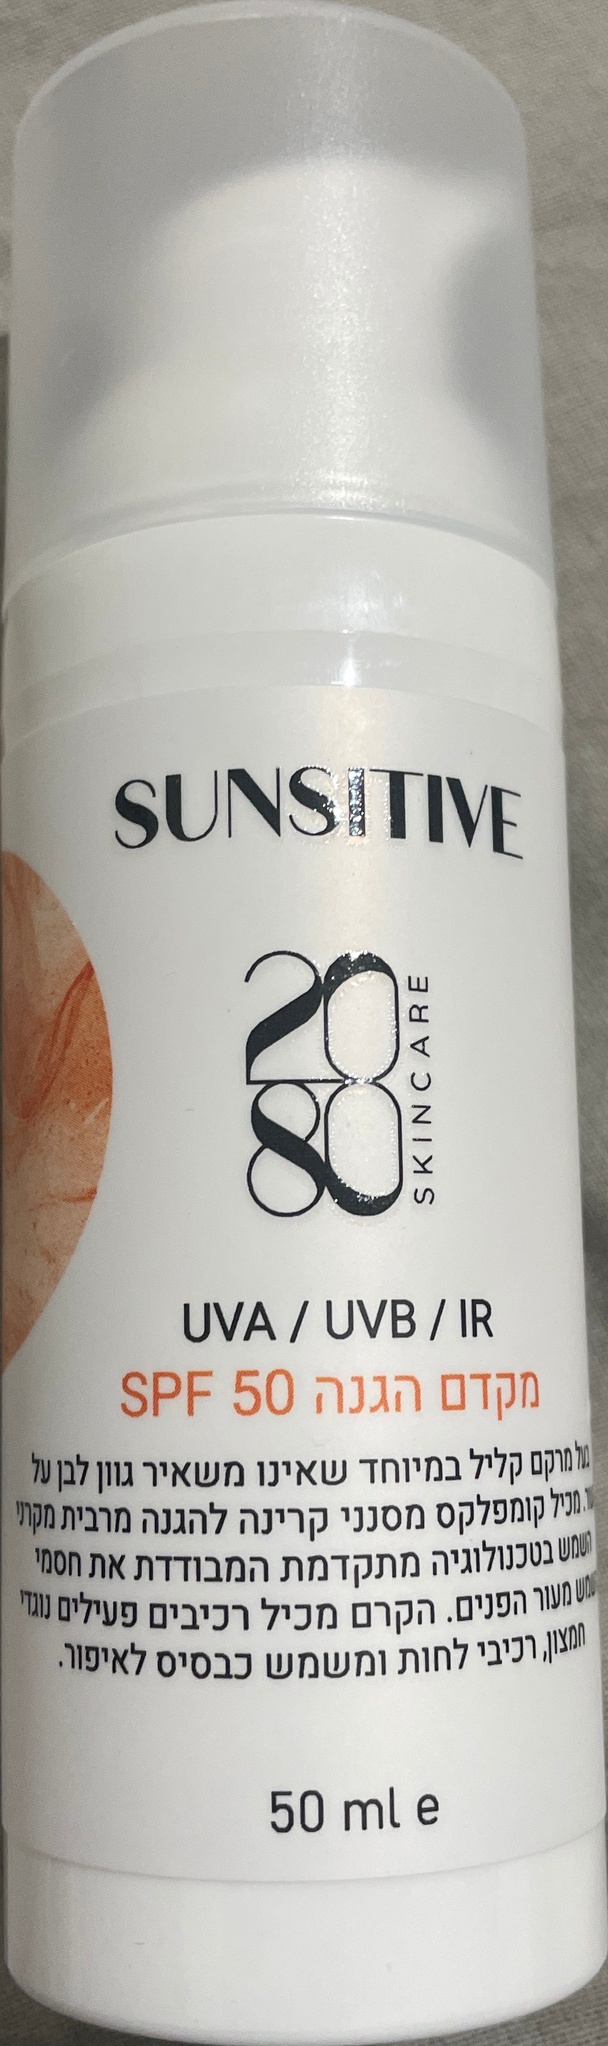 20/80 skincare Sunsitive